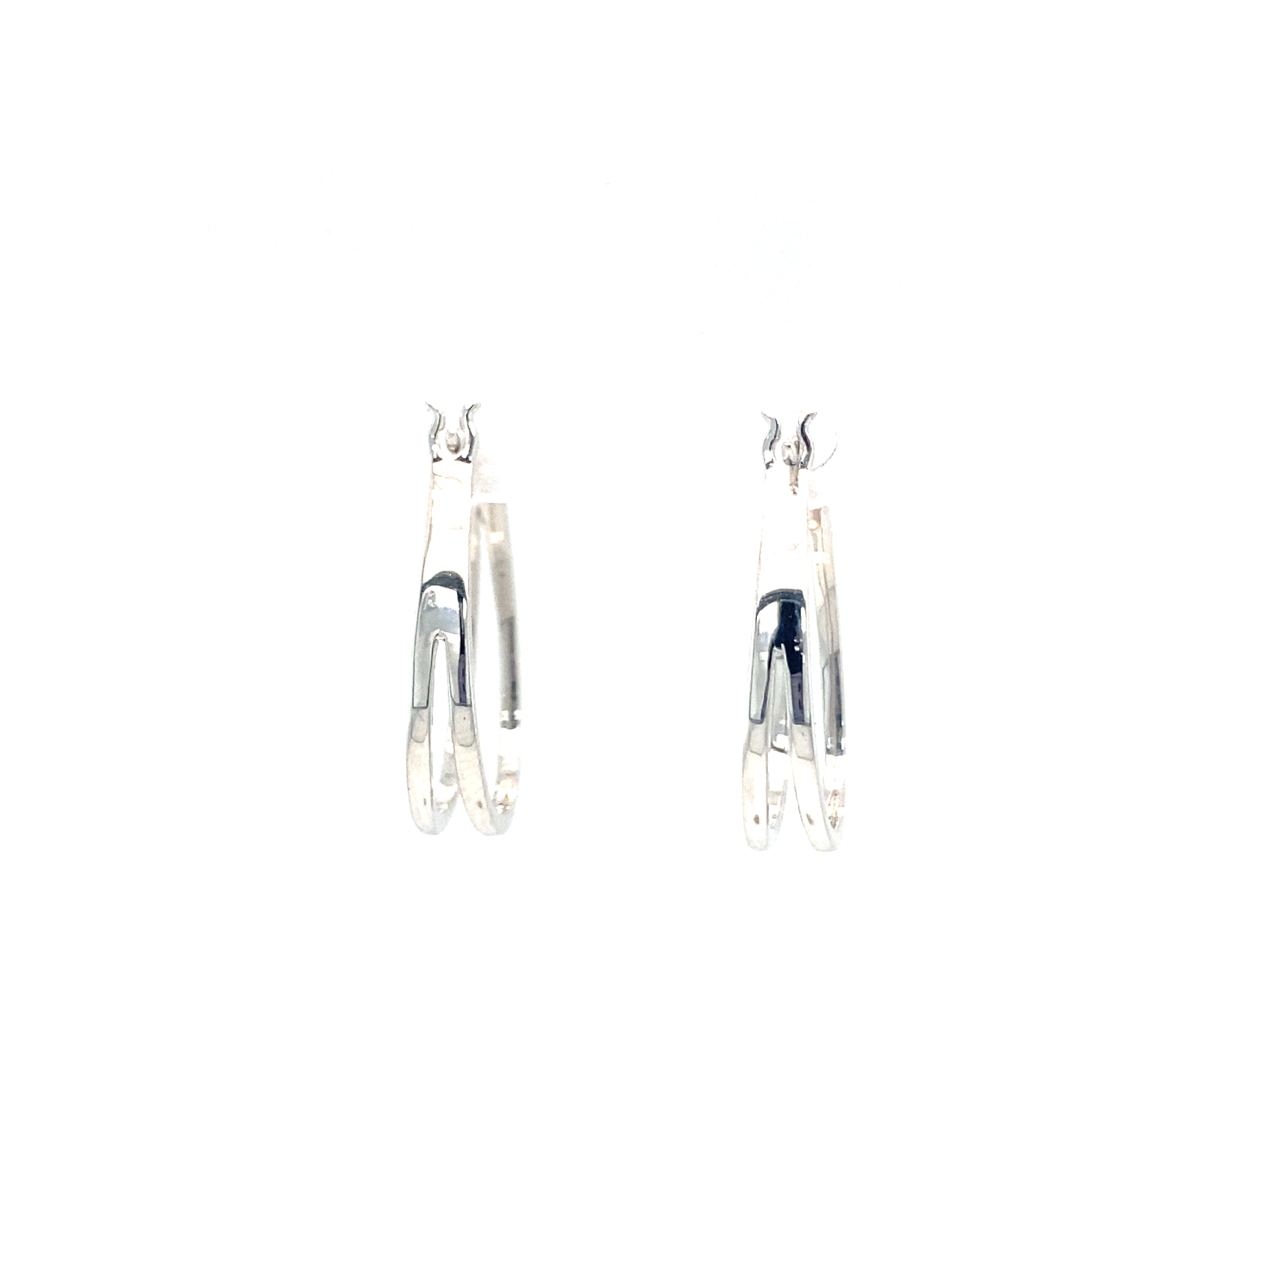 18K White Gold Double V Hoop Diamond Earrings